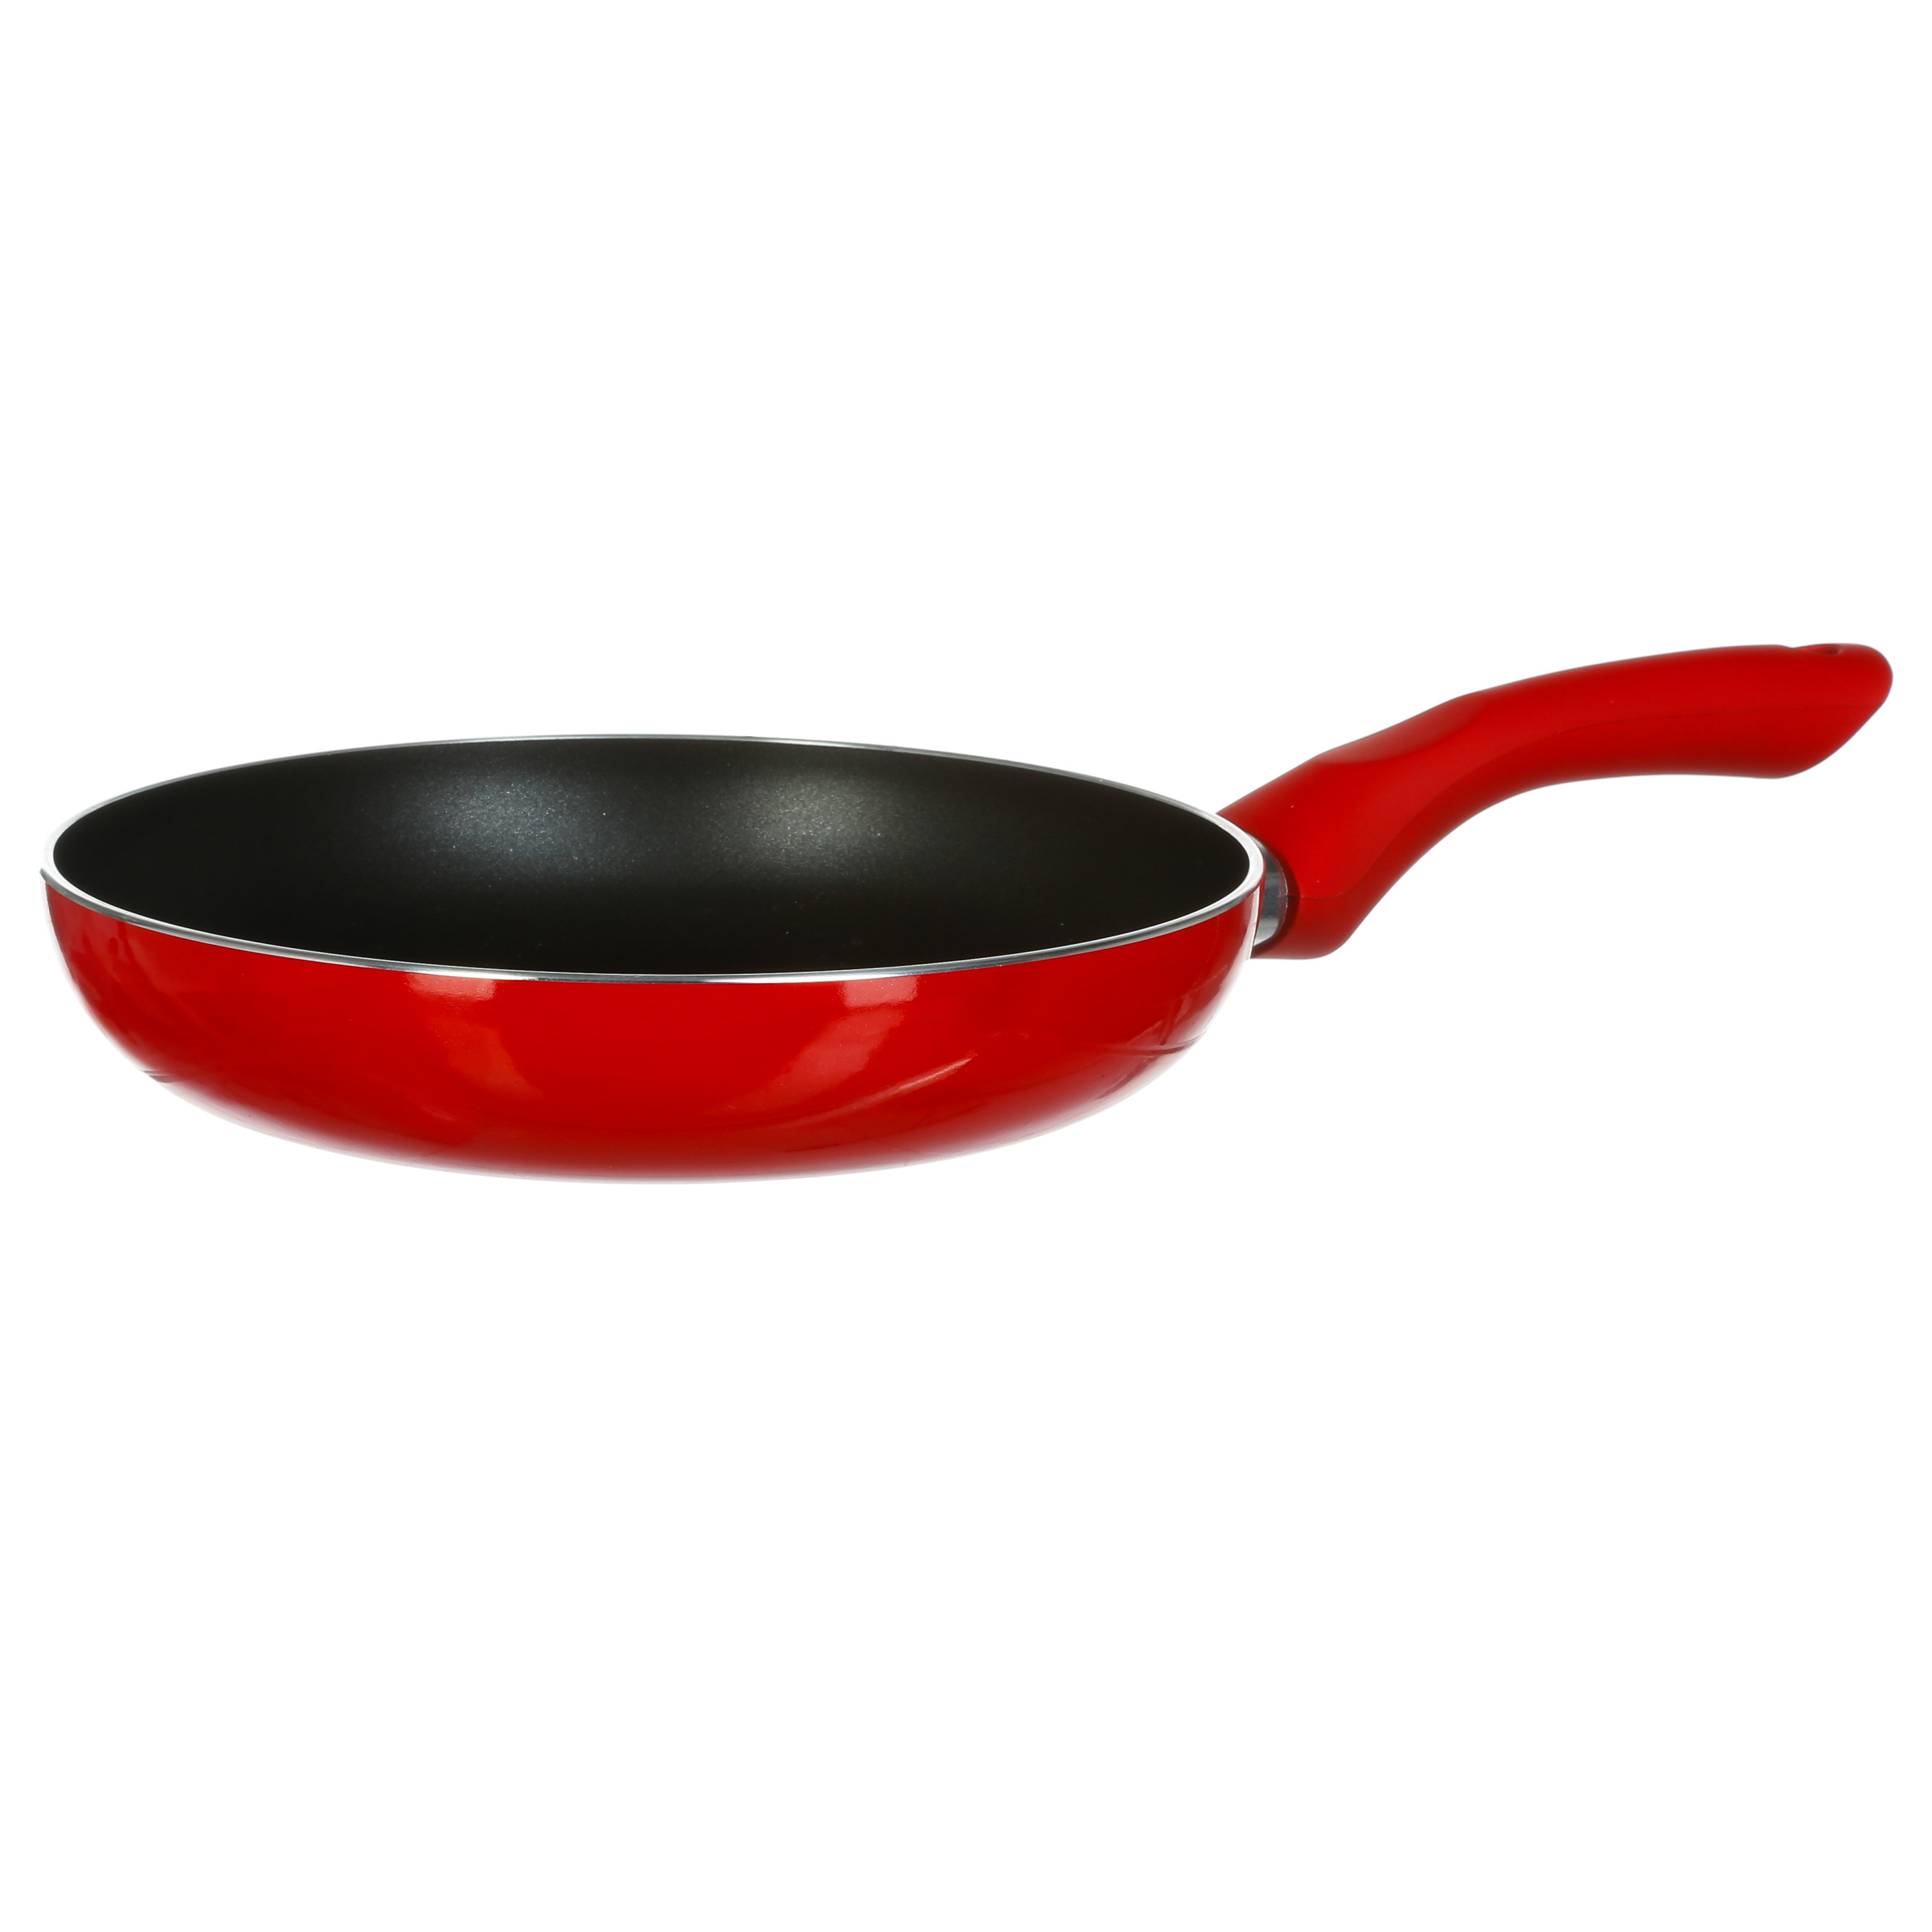 Koekenpan Alle kookplaten geschikt rood-zwart dia 20 cm